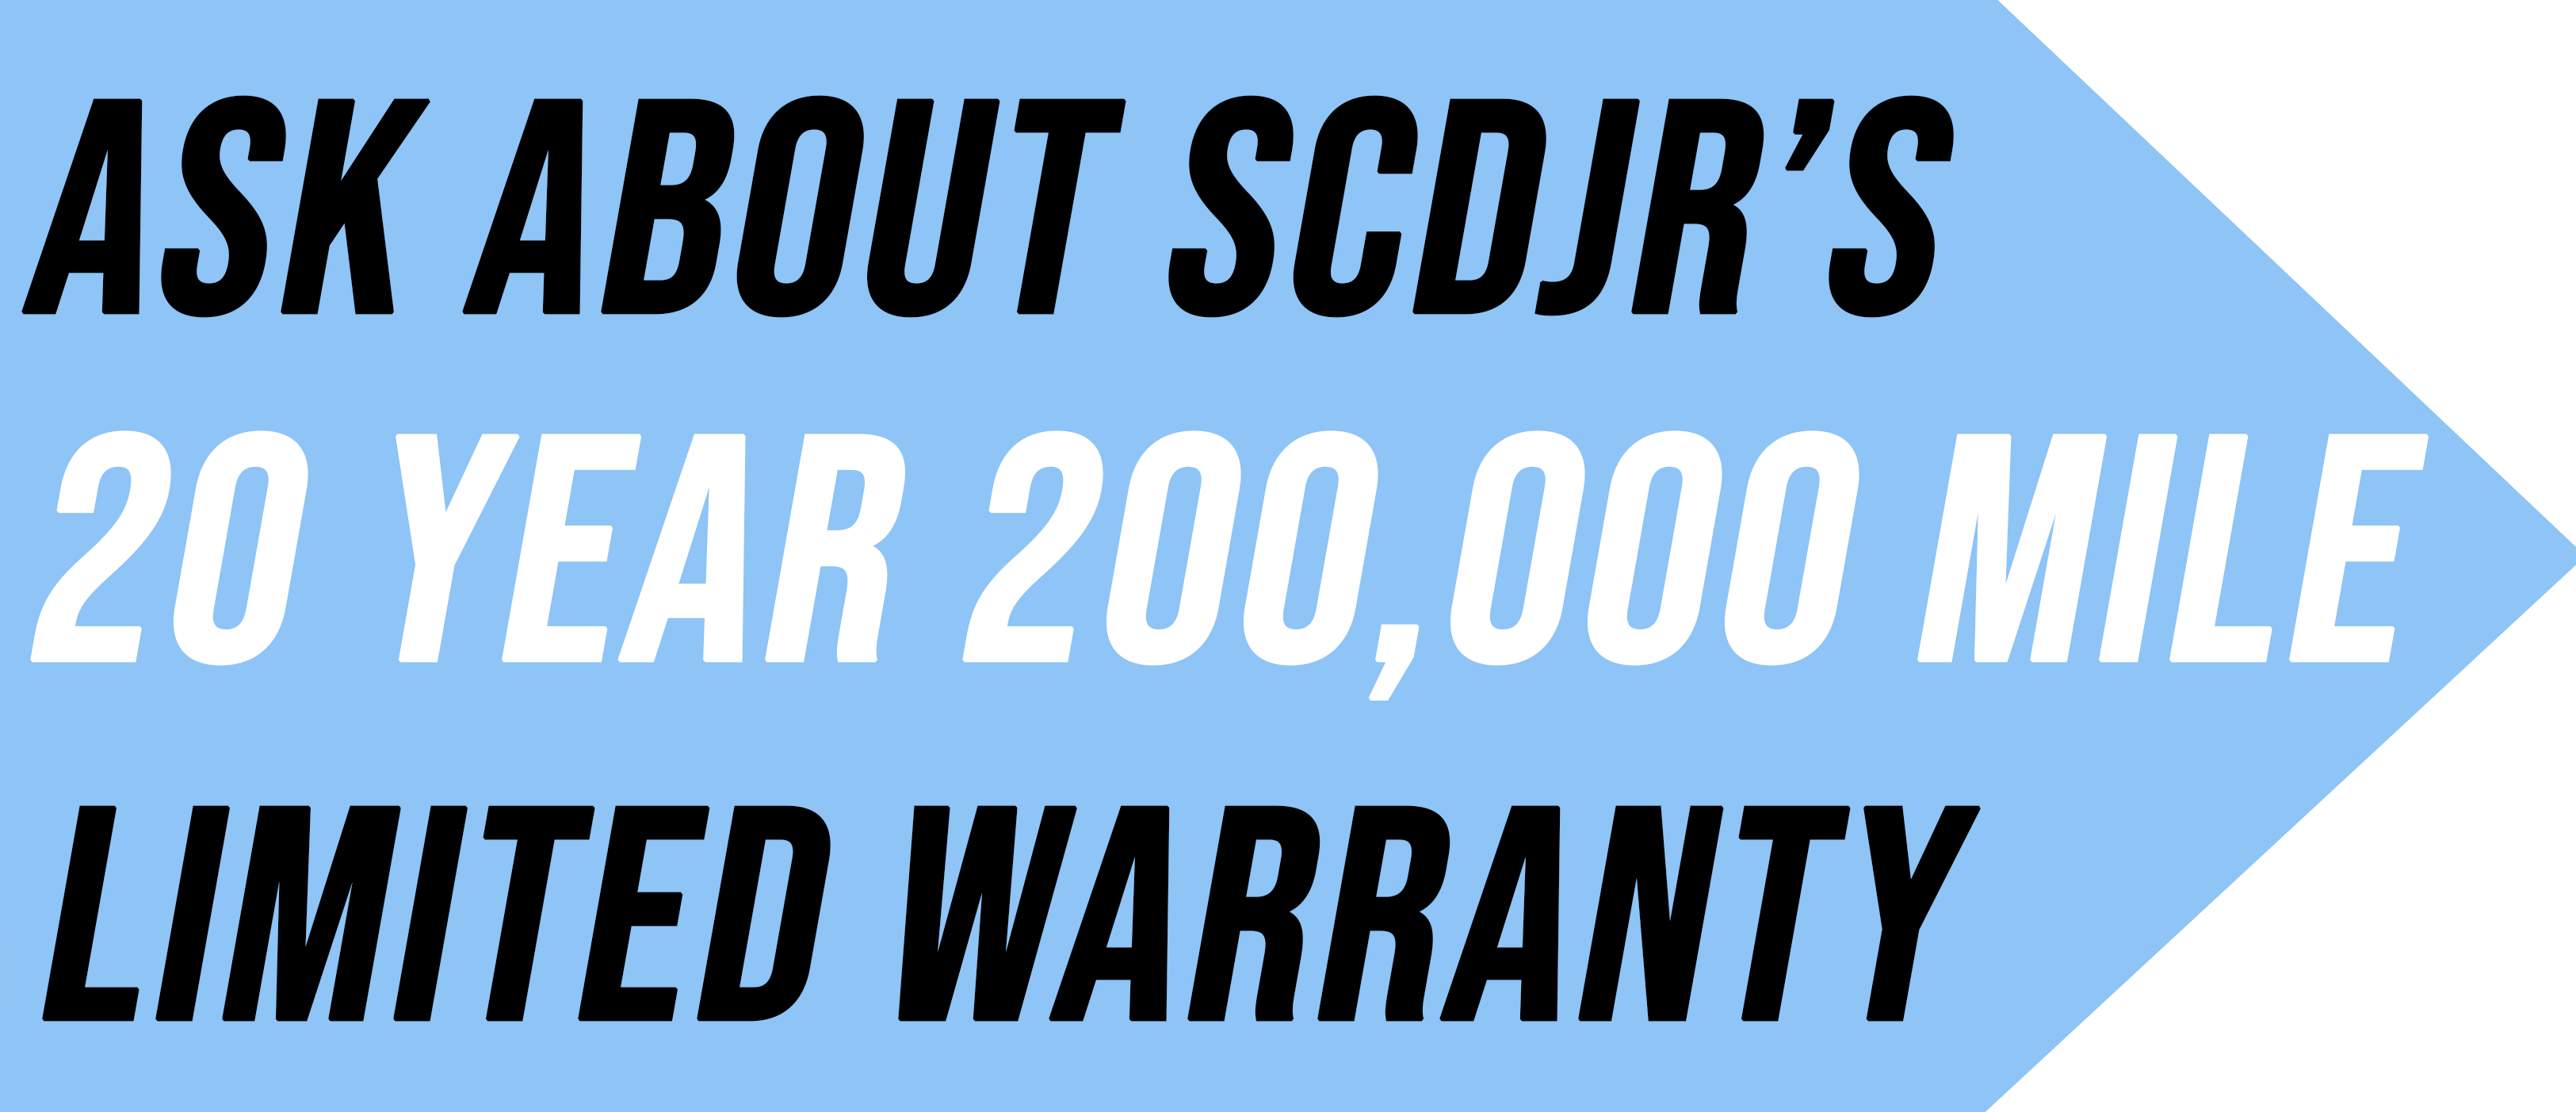 SCDJR Warranty